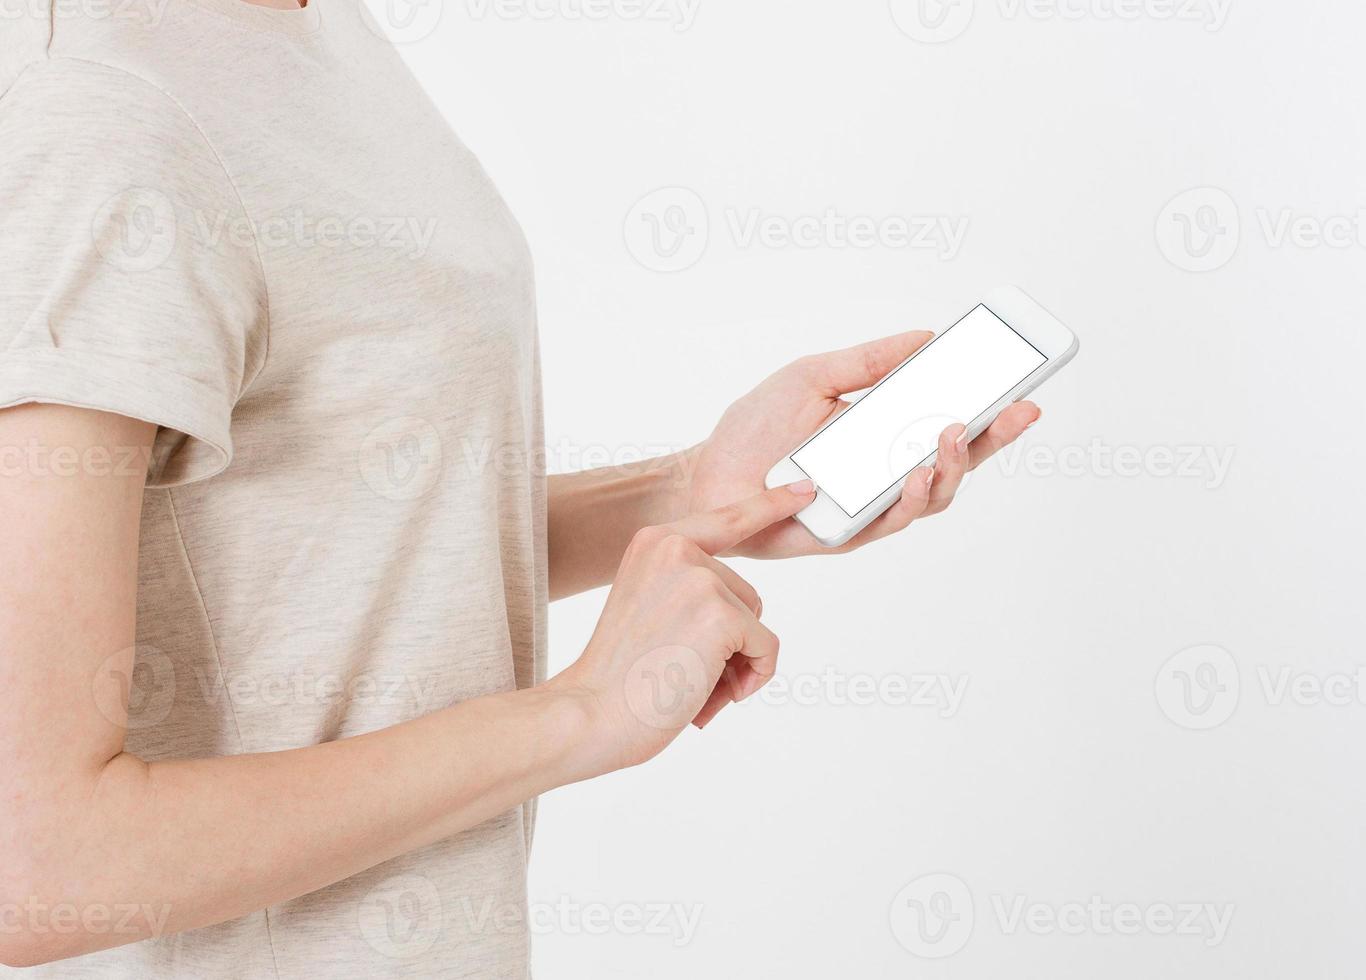 La mujer muestra la pantalla en blanco del teléfono móvil, la mano apunta al dispositivo, la pantalla celular en blanco foto